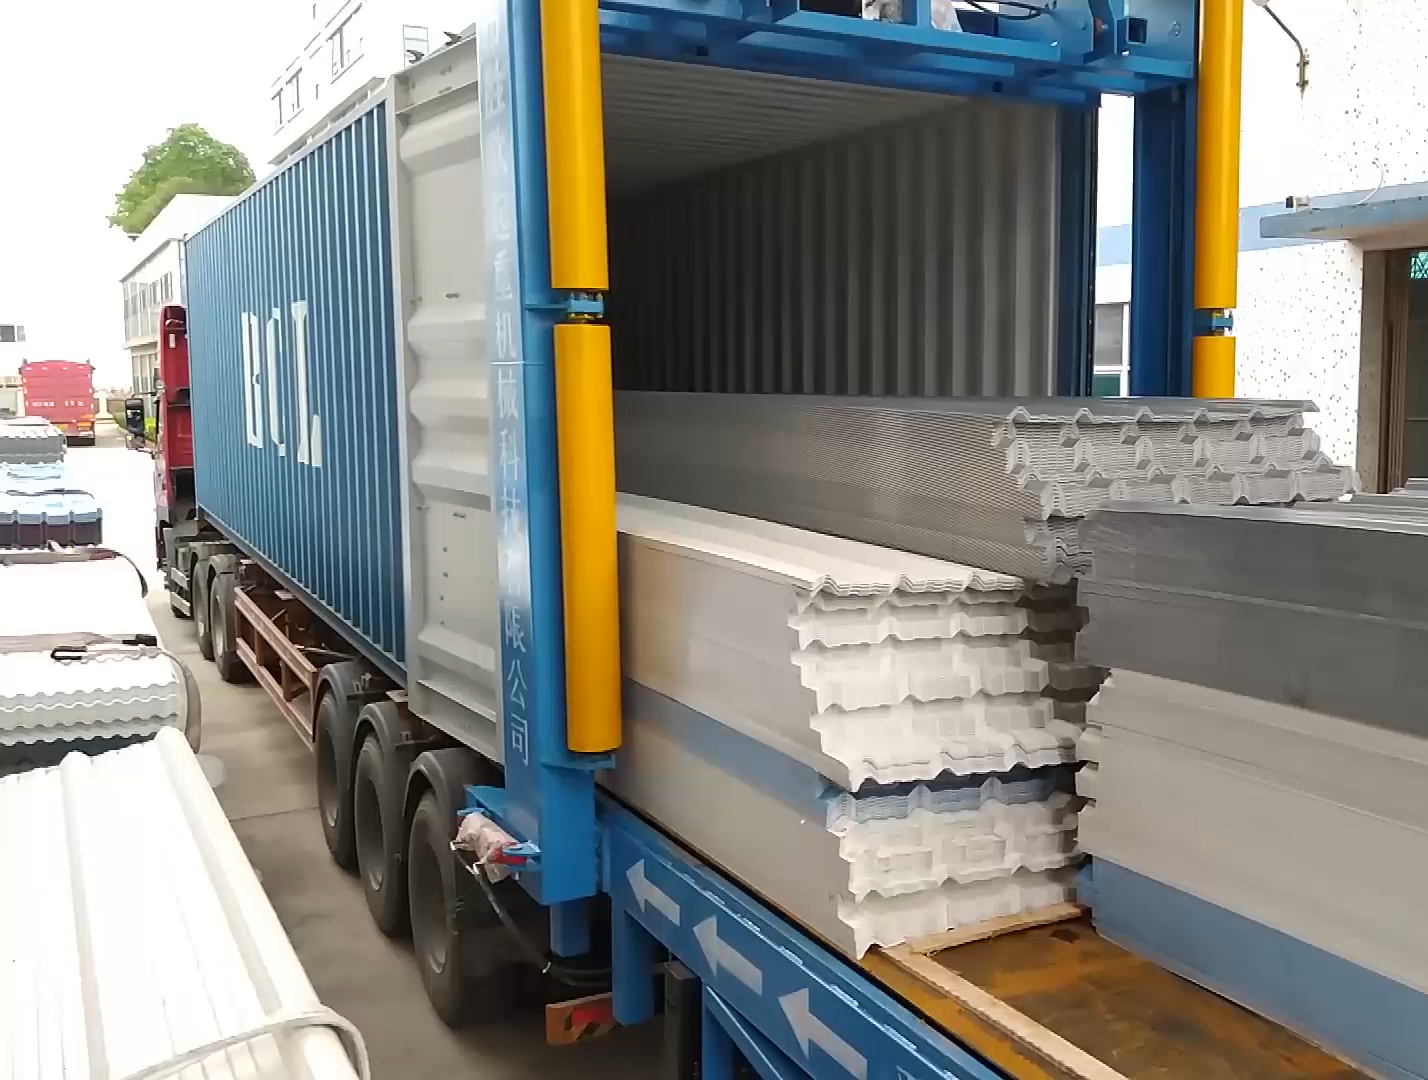 集装箱装货机集装箱装卸平台一次可装货30吨只需5分钟时间 集装箱装货机 集装箱装卸平台